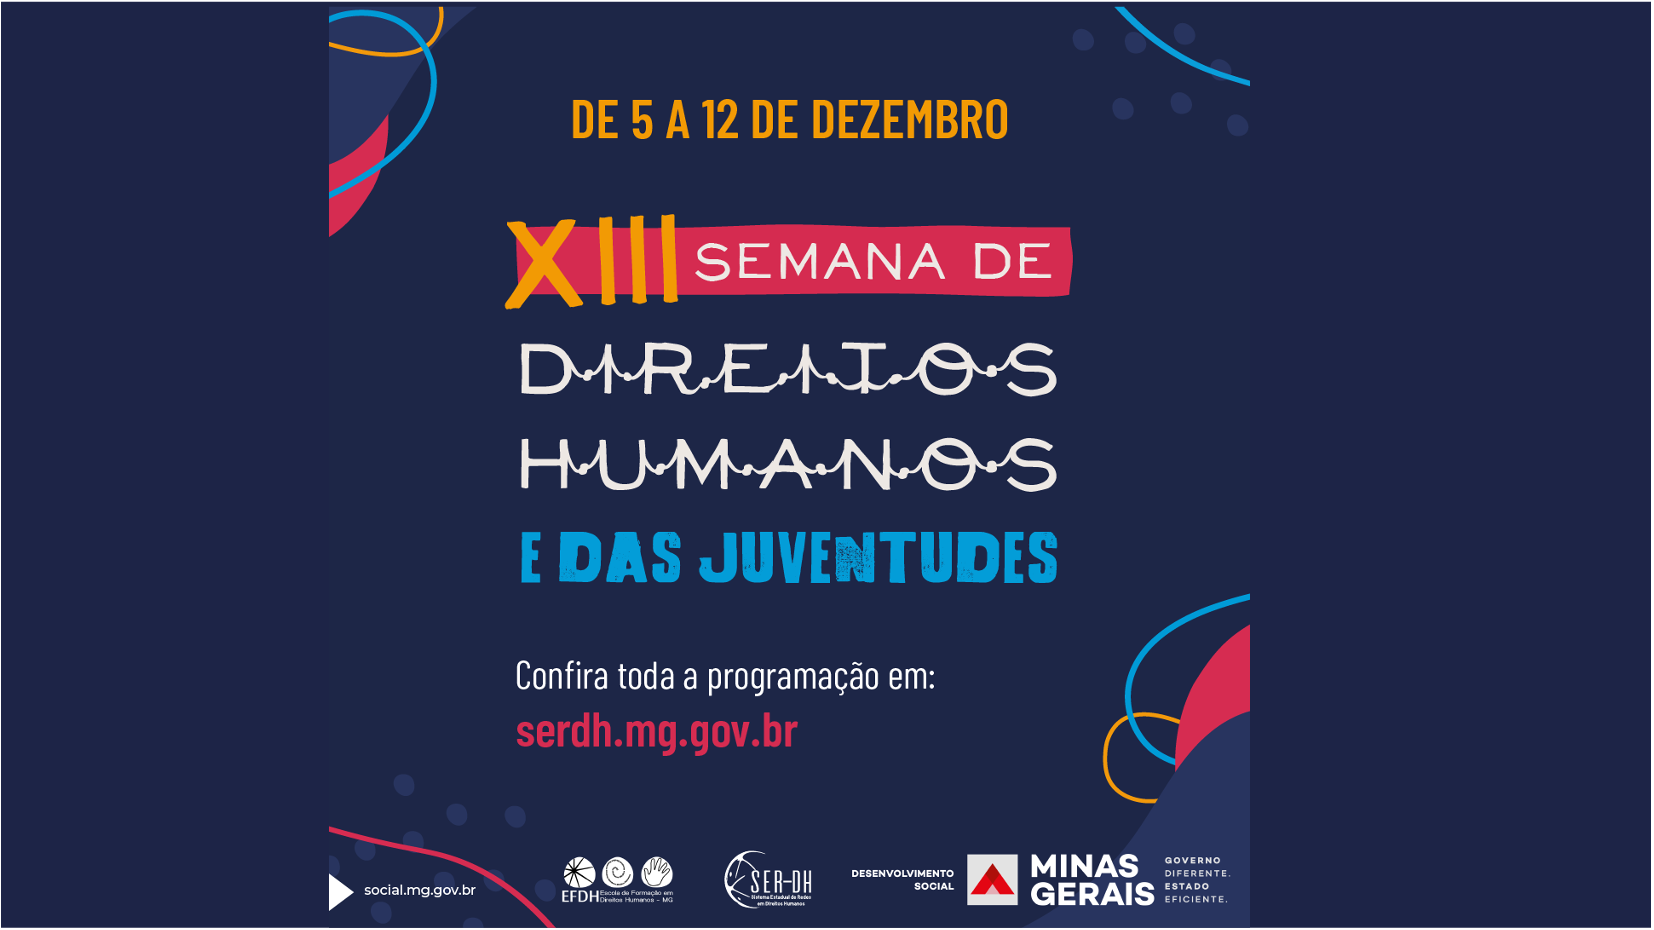 Governo de Minas realiza a XIII Semana de Direitos Humanos e das Juventudes